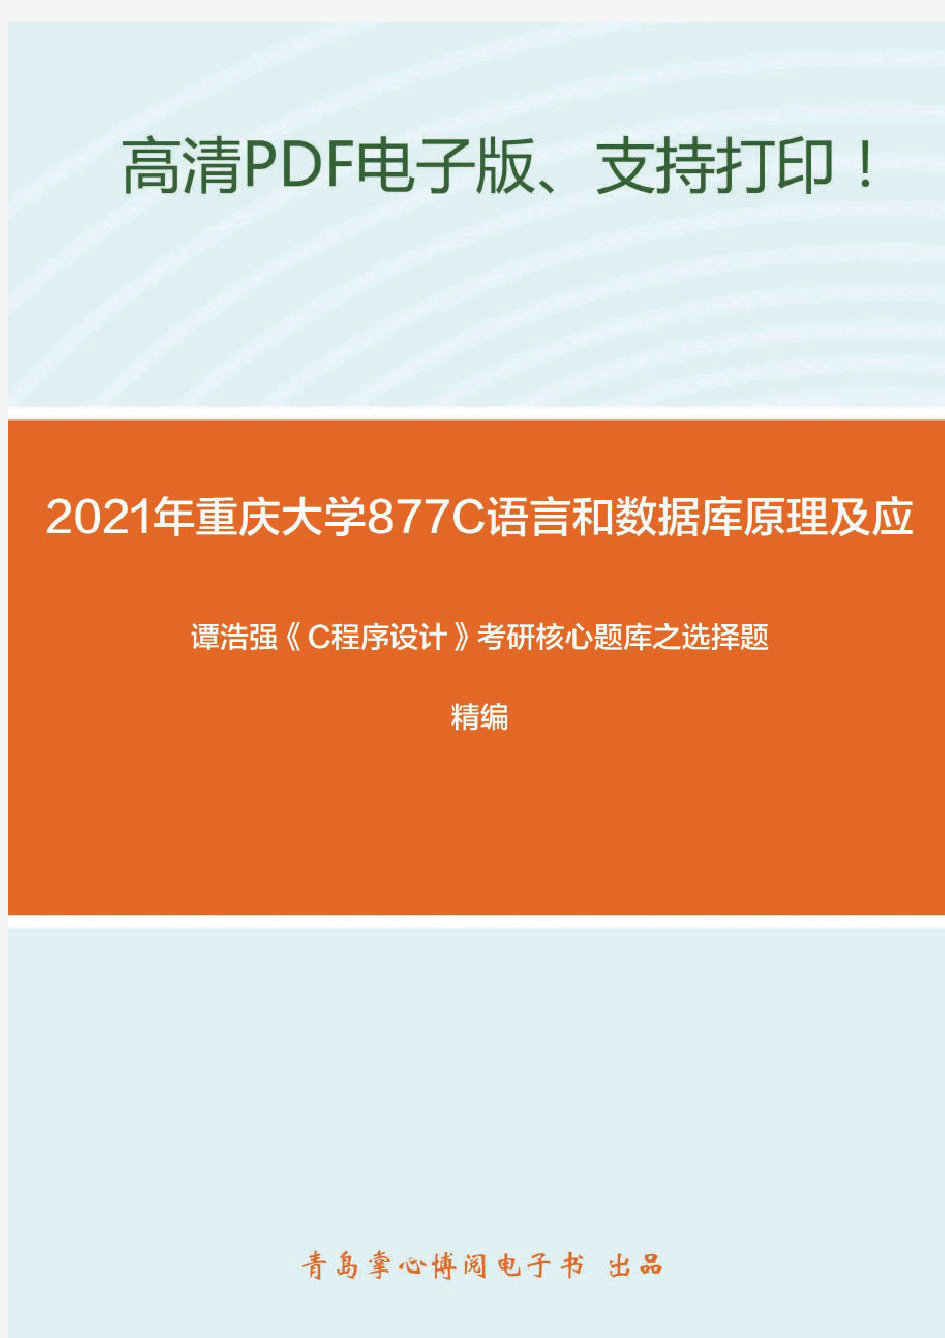 2021年重庆大学877C语言程序设计和数据库原理及应用精品资料之谭浩强《C程序设计》考研核心题